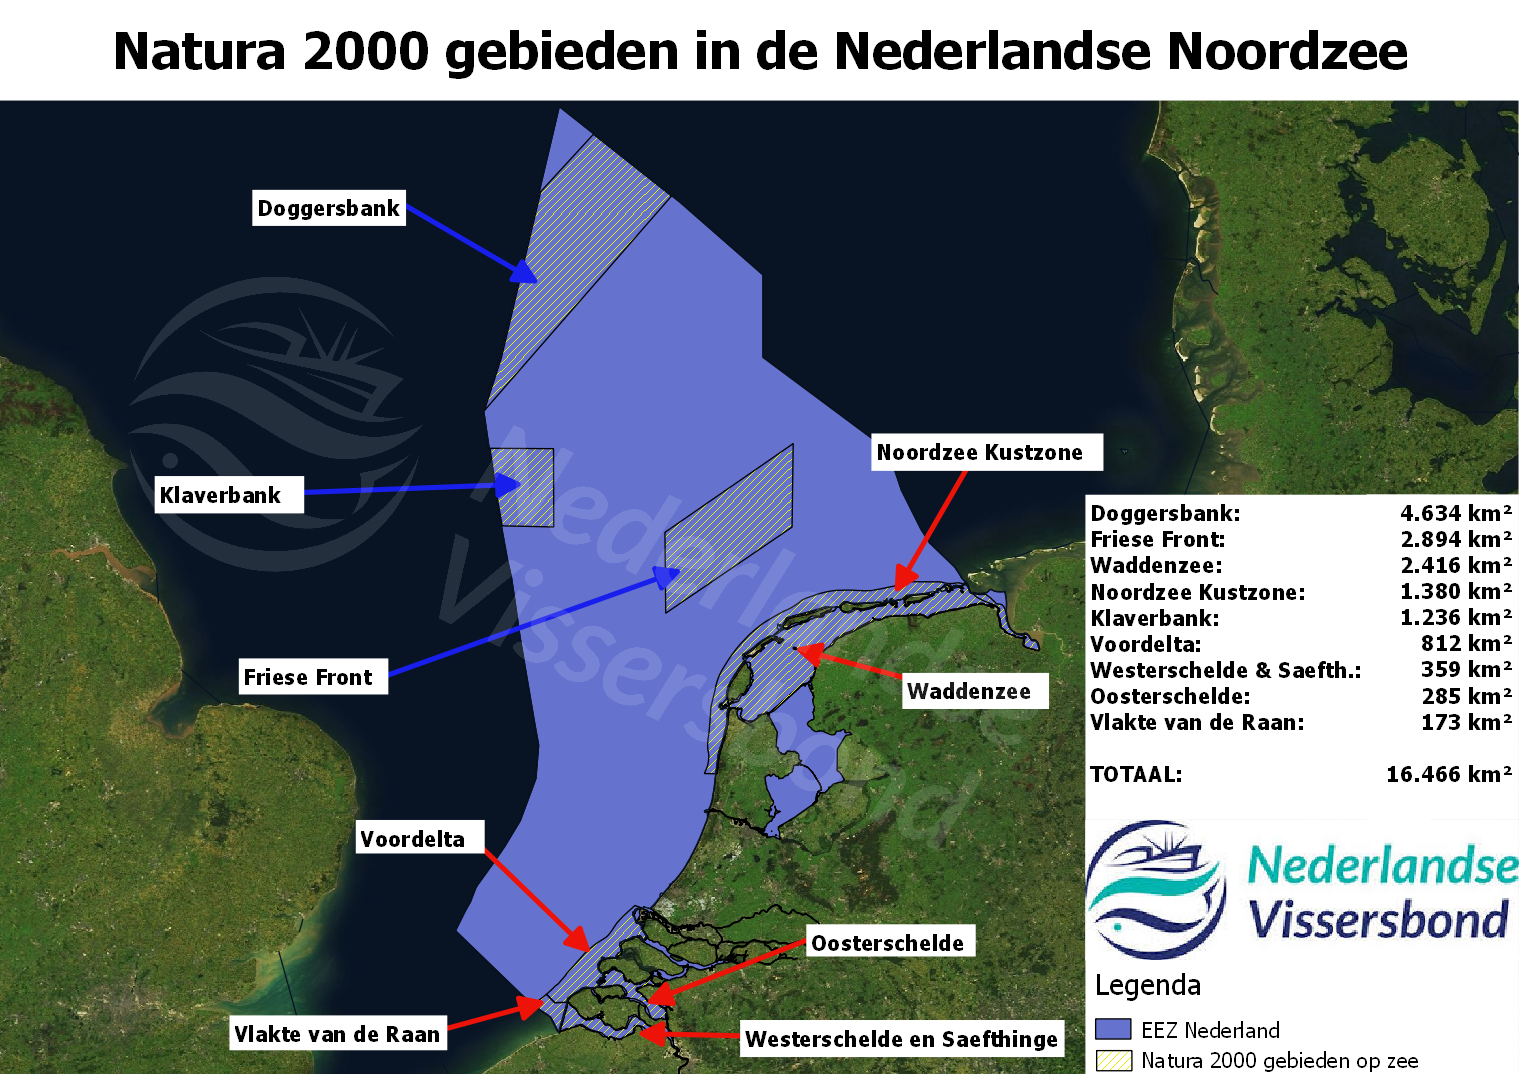 Natura 2000 gebieden in de Nederlandse Noordzee